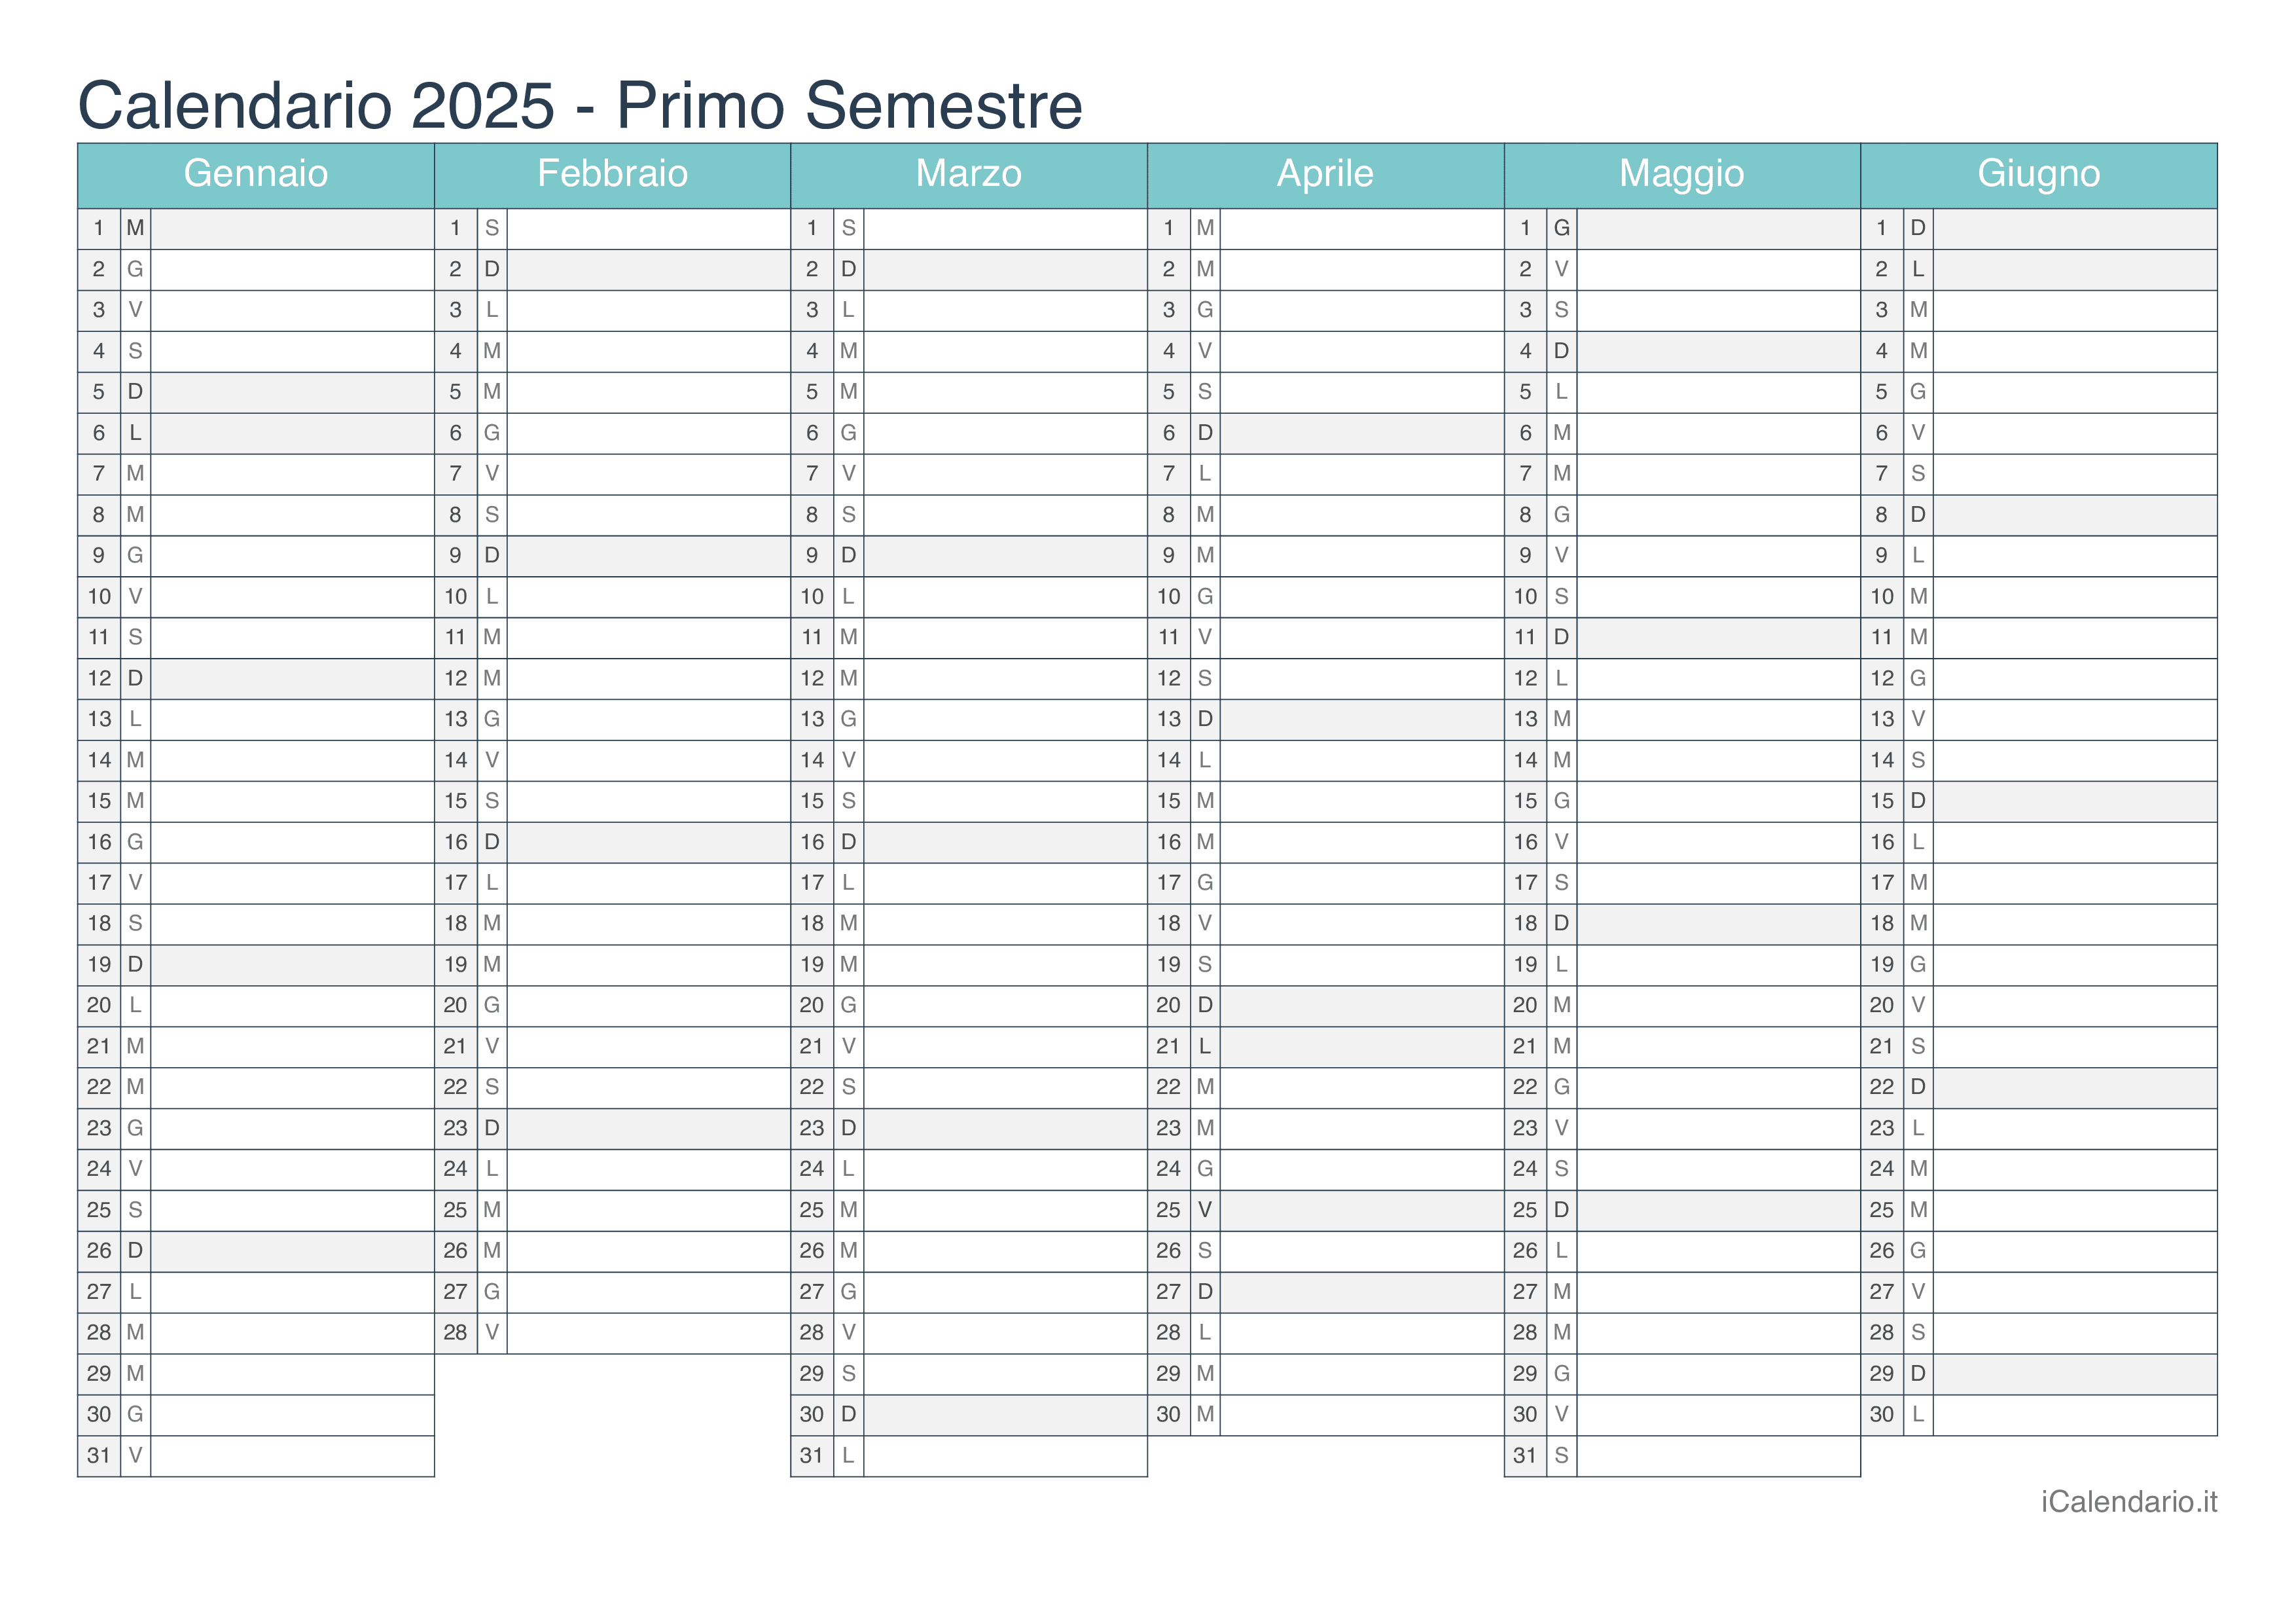 Calendario semestrale 2025 - Turchese